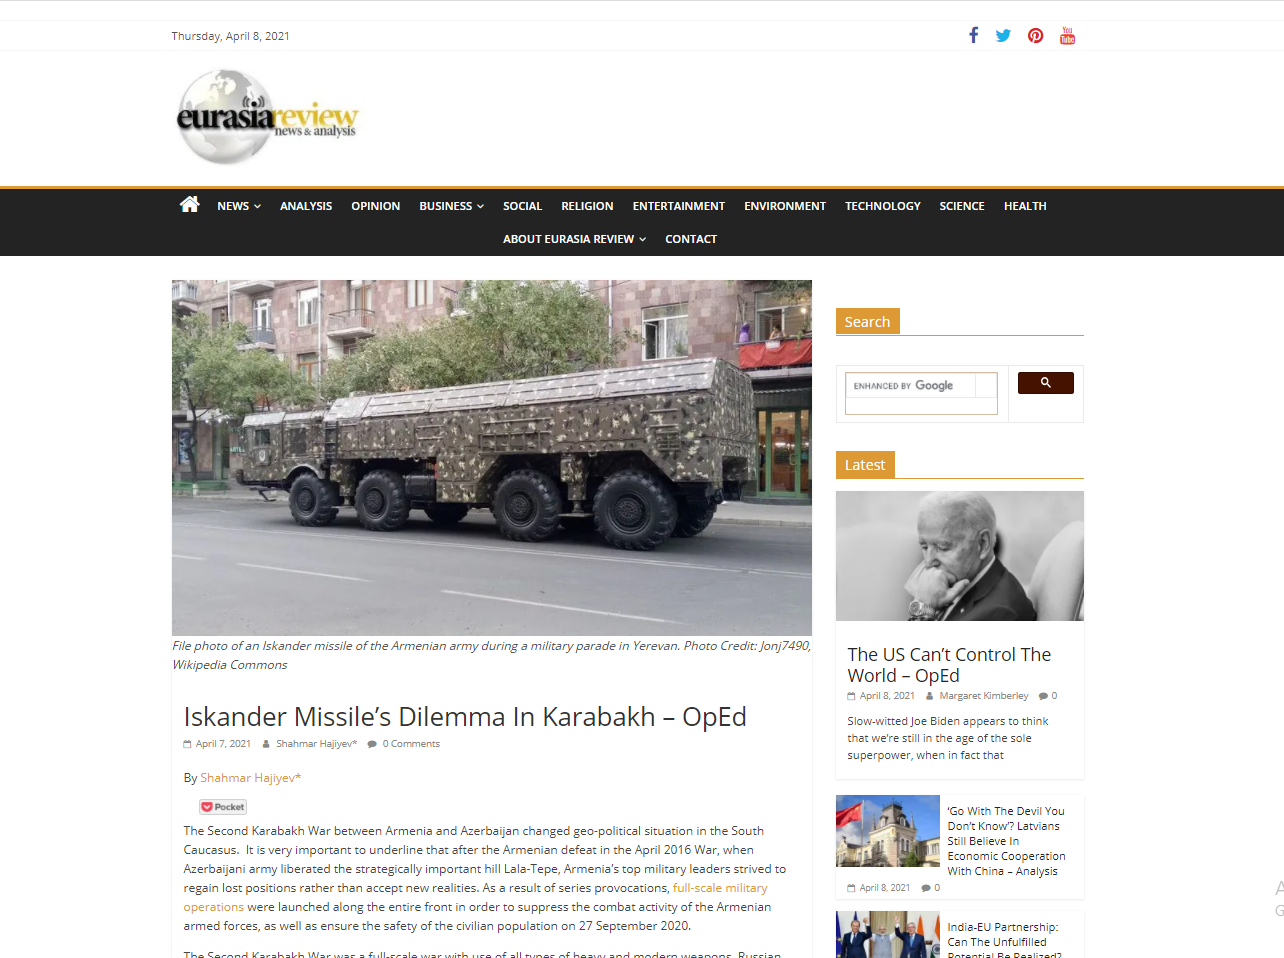 Iskander Missile’s Dilemma In Karabakh – OpEd